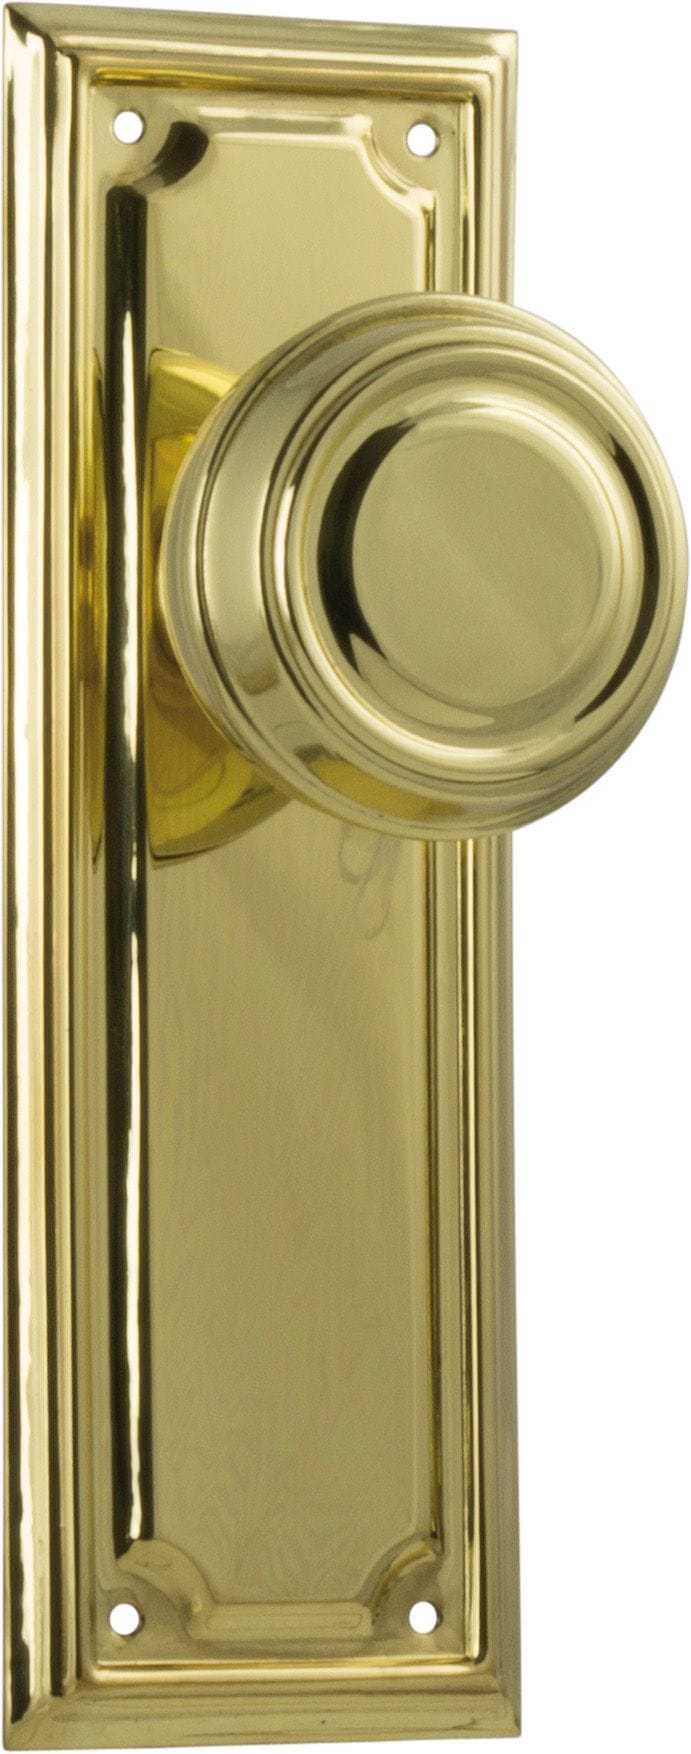 Edwardian Knob Latch Polished Brass